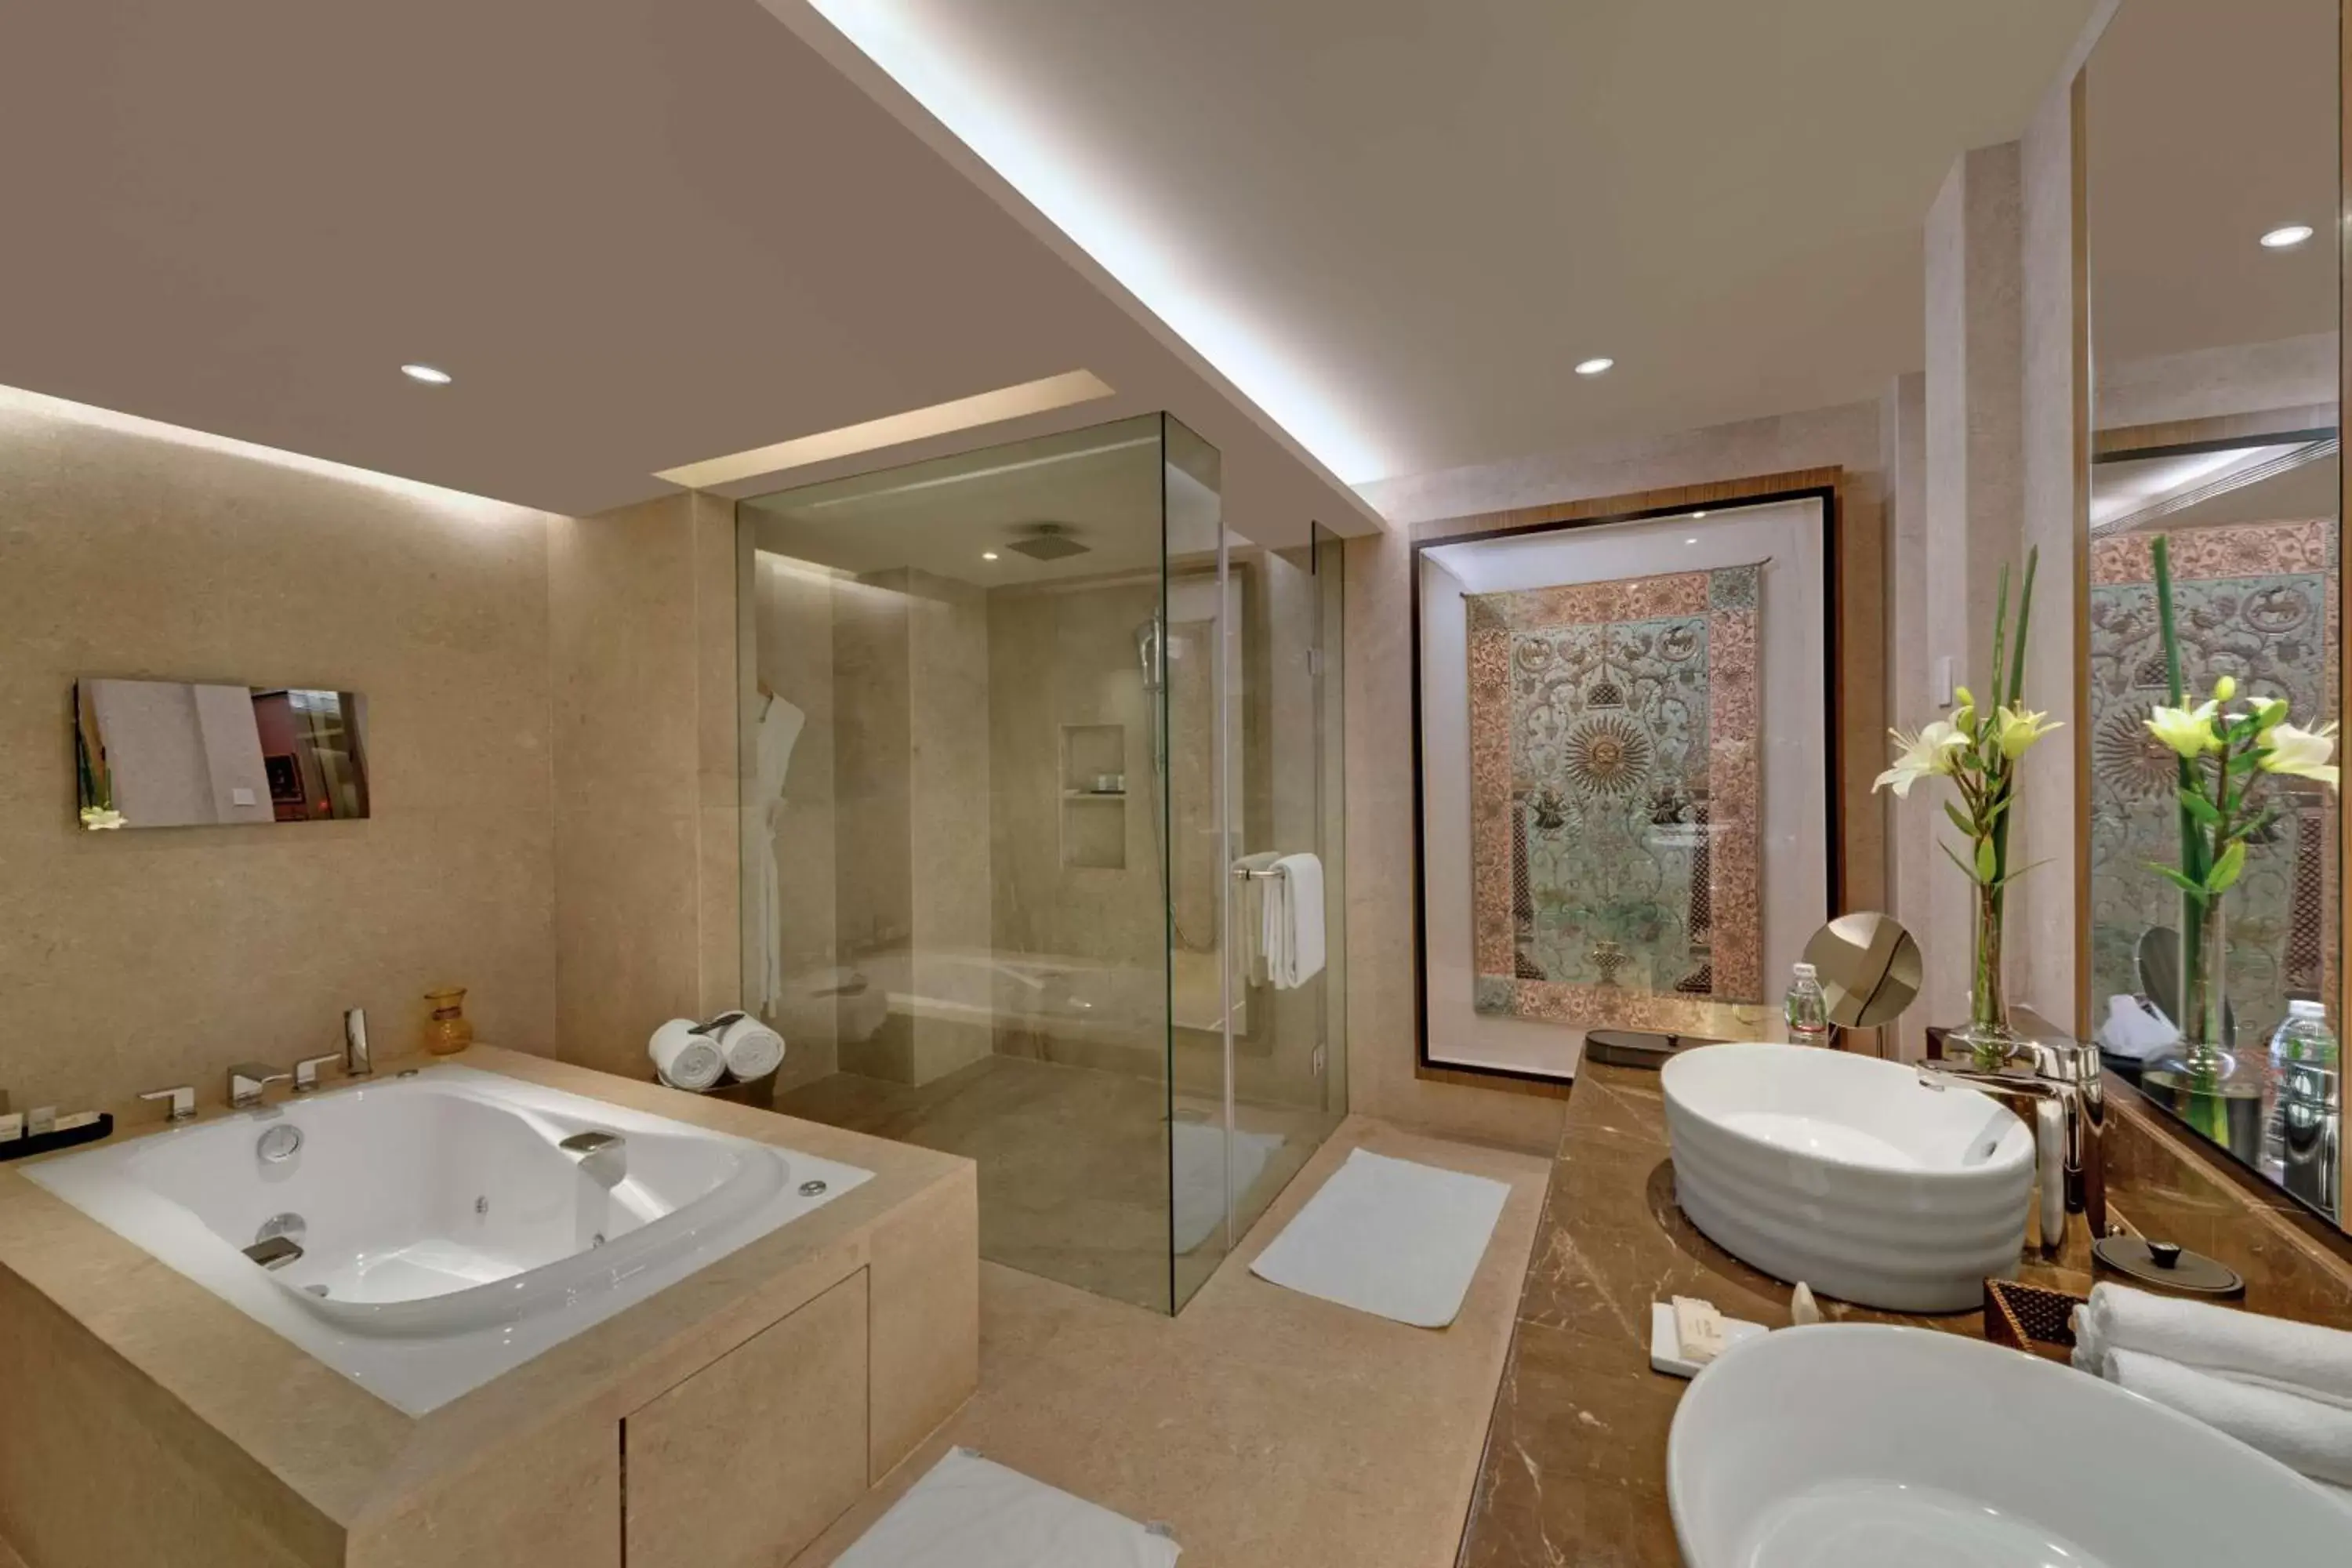 Photo of the whole room, Bathroom in Hyatt Regency Ahmedabad